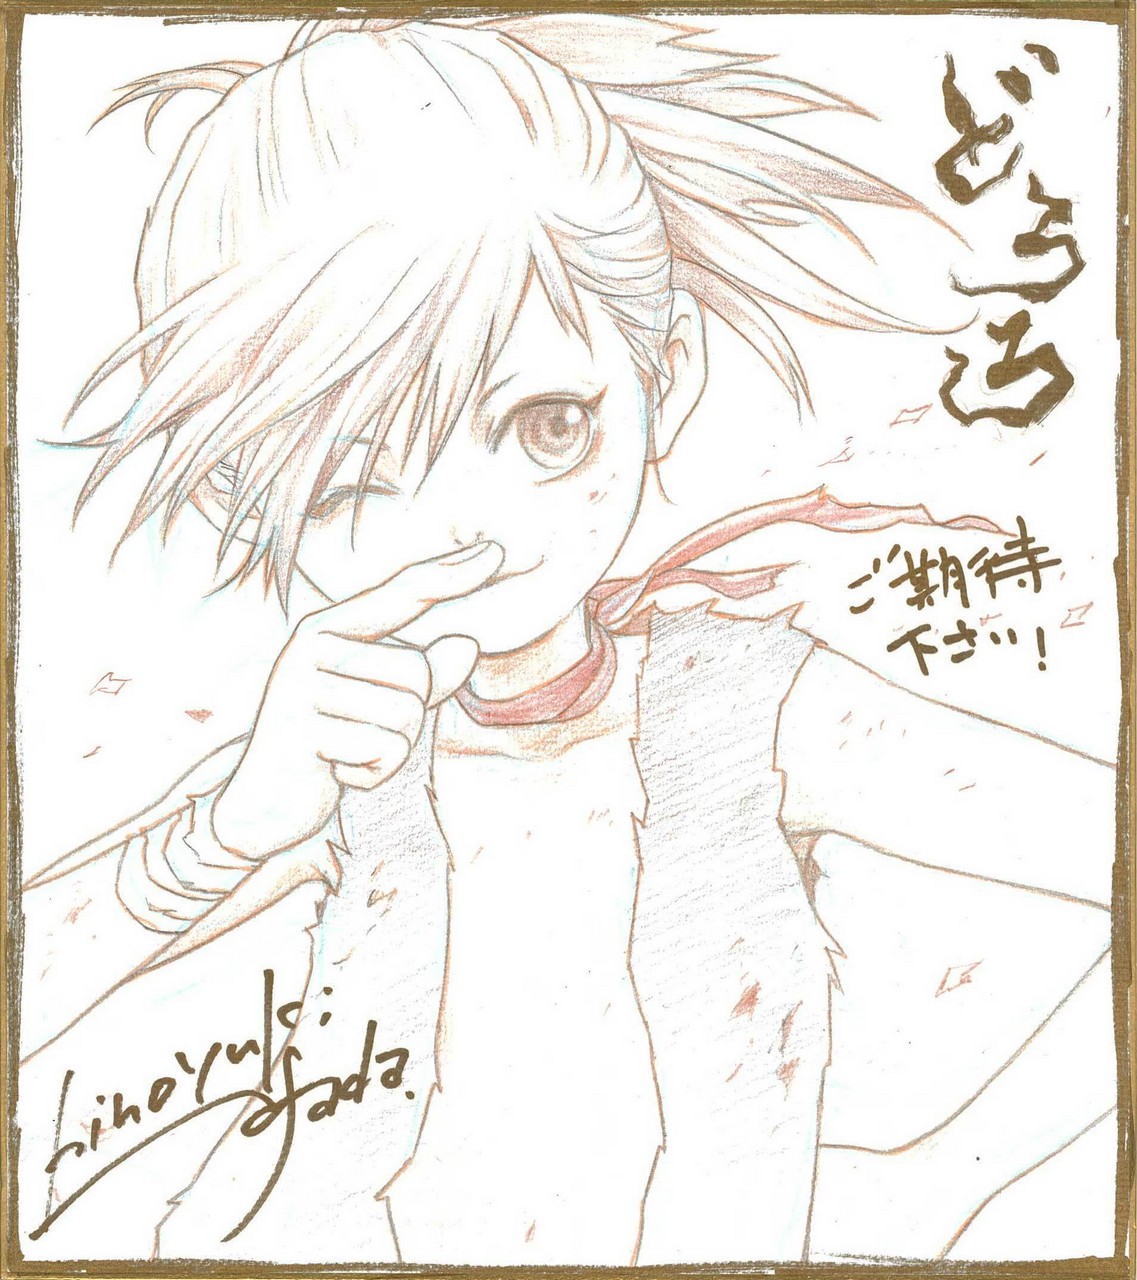 Asada Hiroyuki Dororo Manga Dororo Character Autographed No Bra Open Shirt Sketc